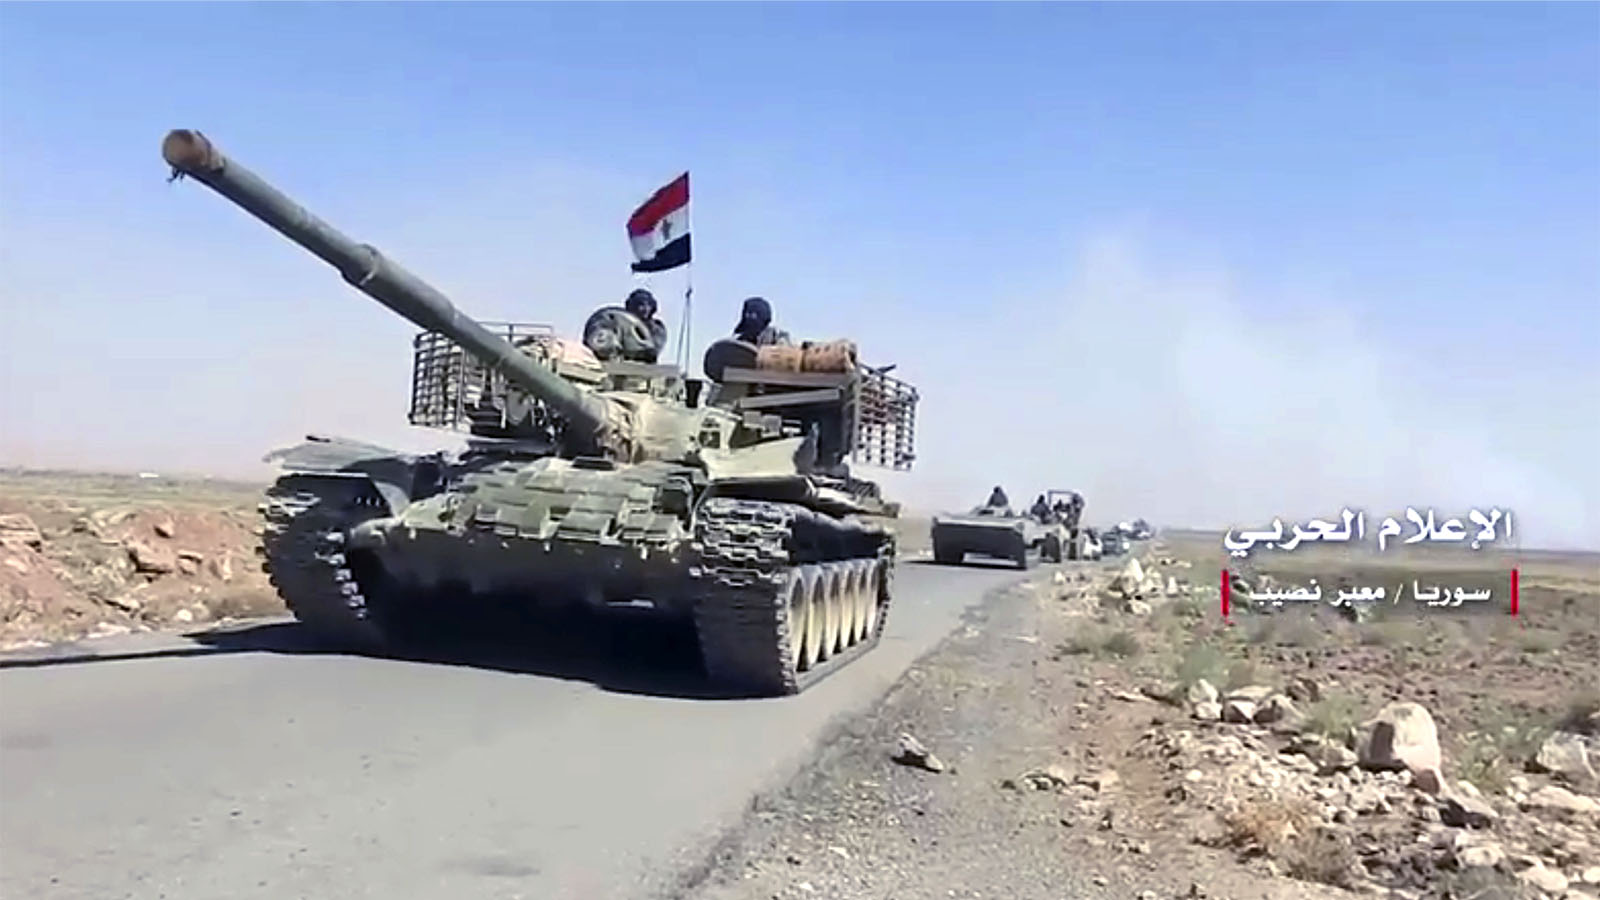 שיירת טנקים סוריים במחוז דרעא בדרום סוריה בסמוך לגבול עם ירדן (צילום: Syrian Central Military Media, via AP).